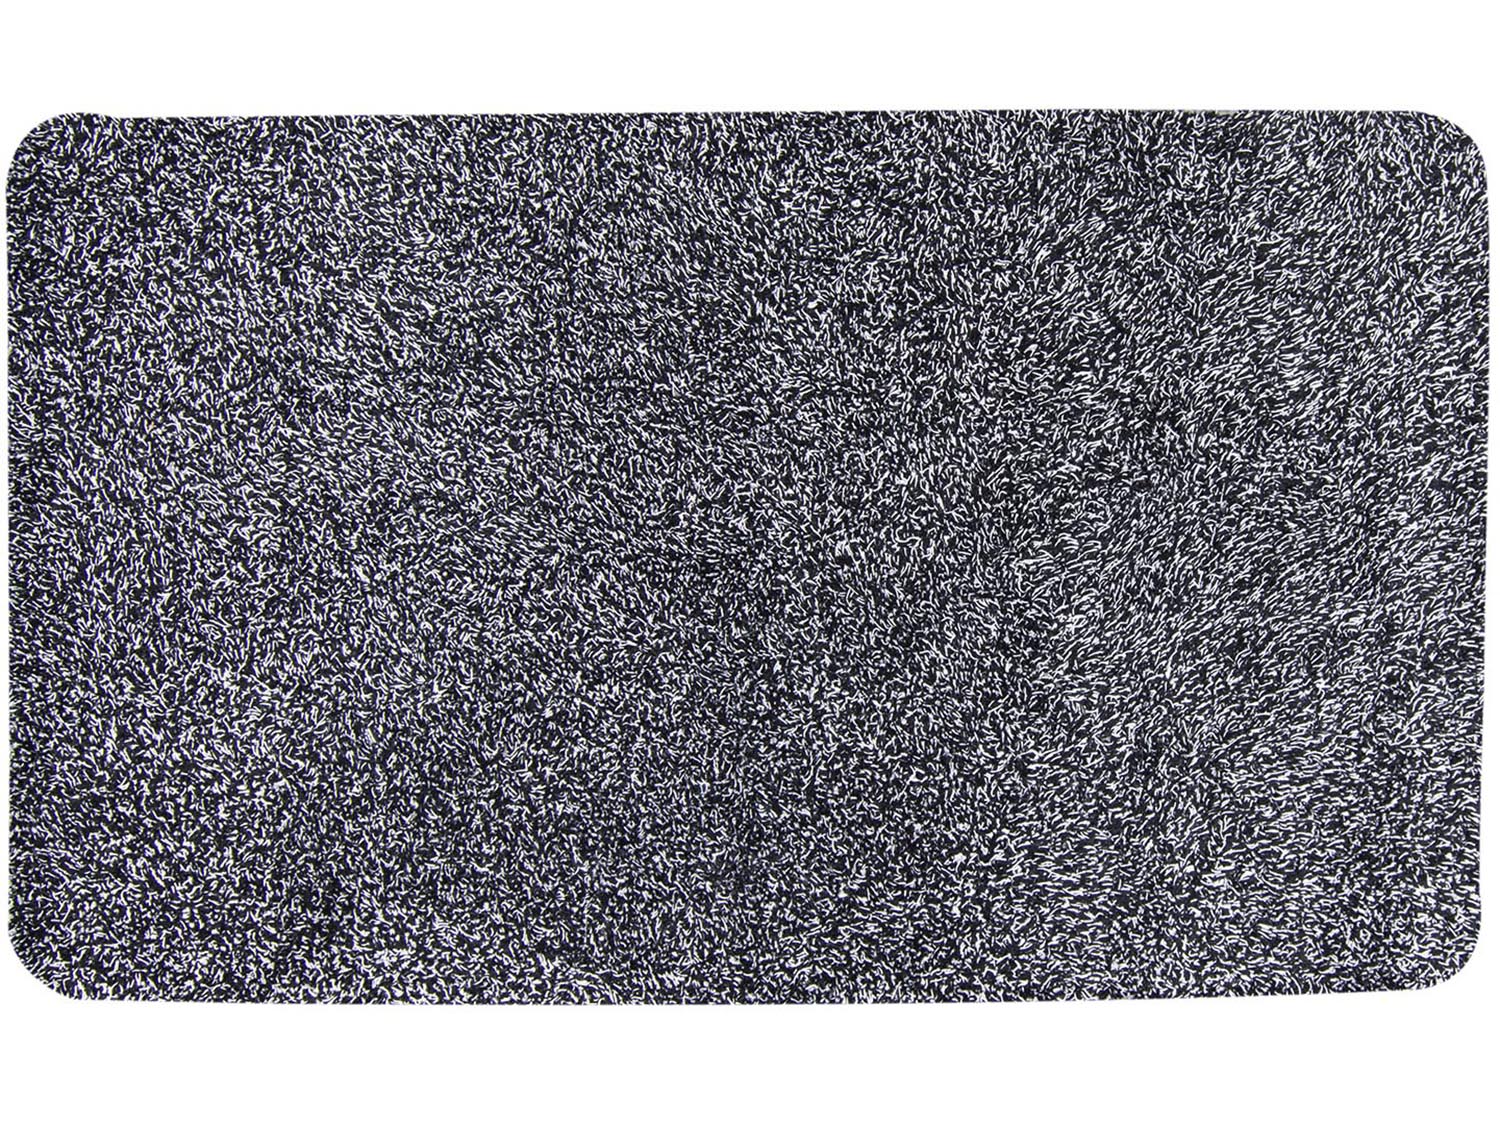 PROPER Rohožka 45x75cm textilní super absorbní MAGIC černo bílá